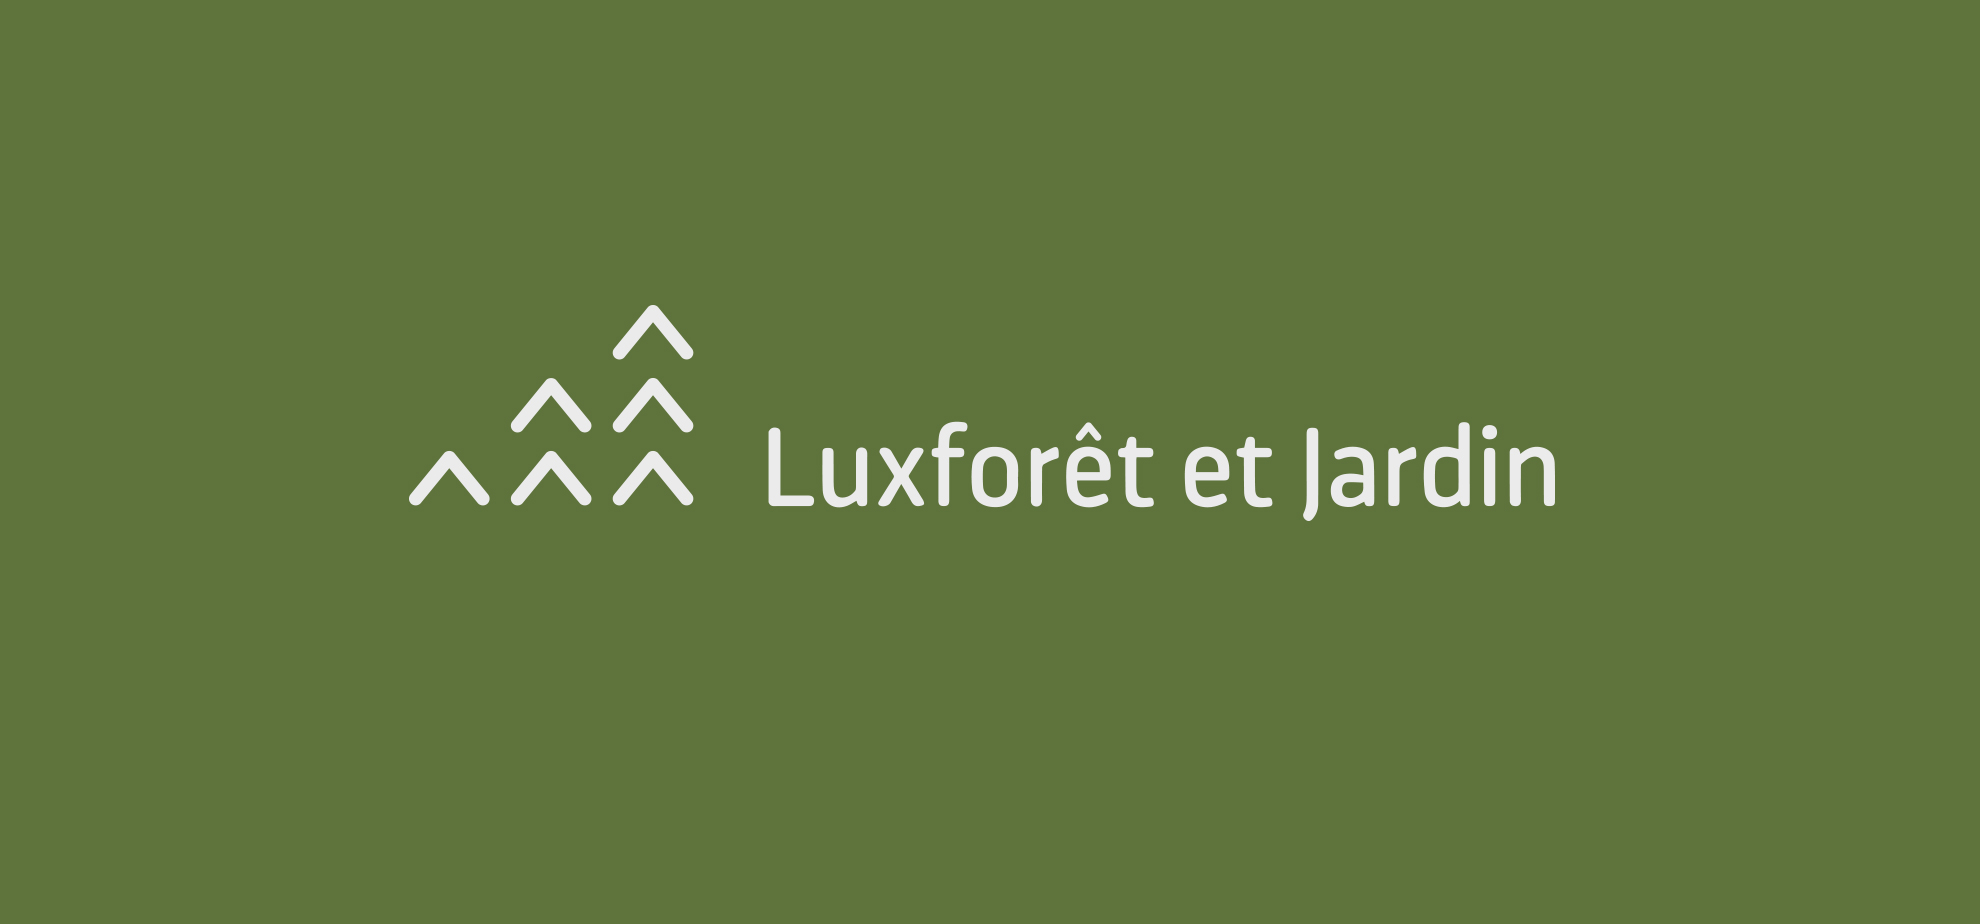 Luxforêt et Jardin nouveau Logo - création de logo et identité visuelle